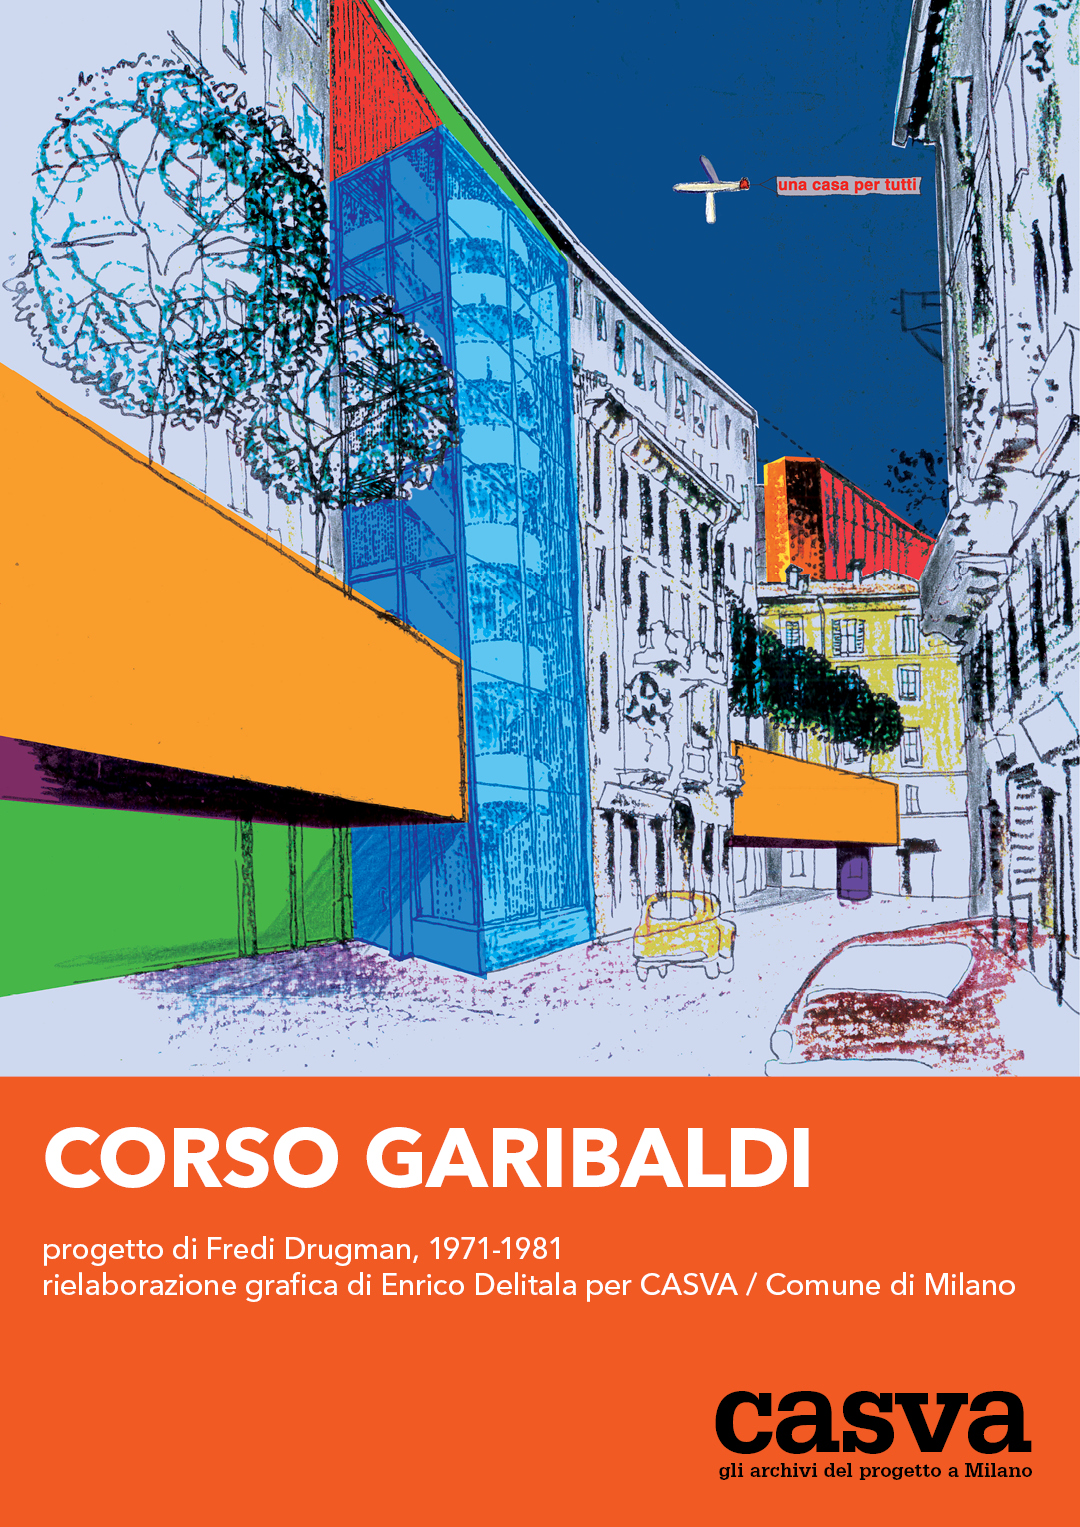 Corso Garibaldi: Enrico Delitala CASVA Milano città immaginata Fredi Drugmann Corso Garibaldi 